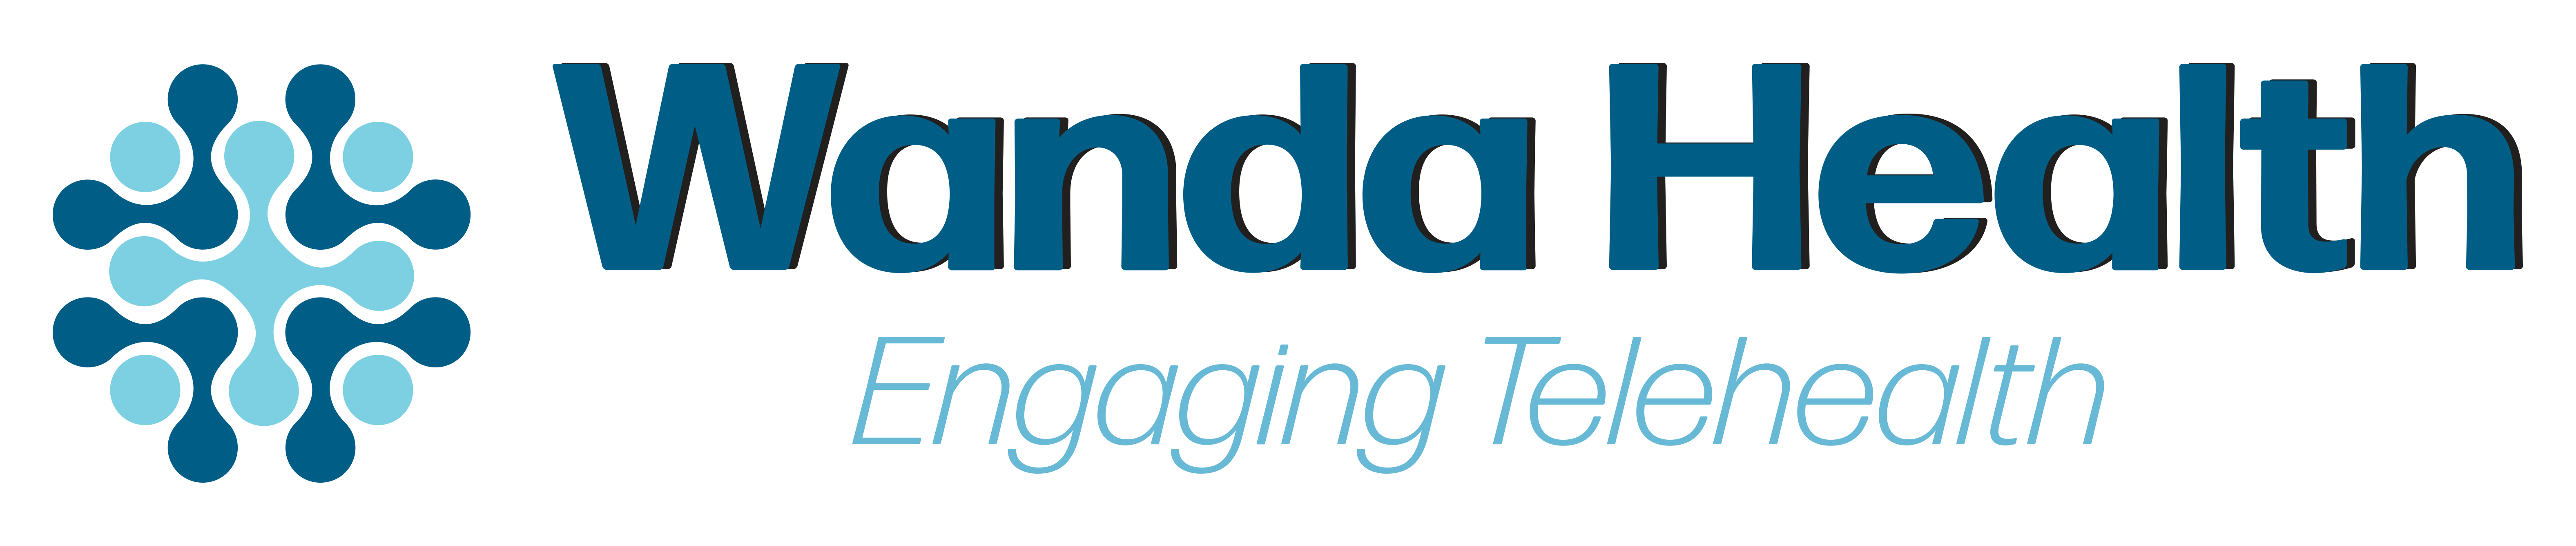 Wanda Health logo